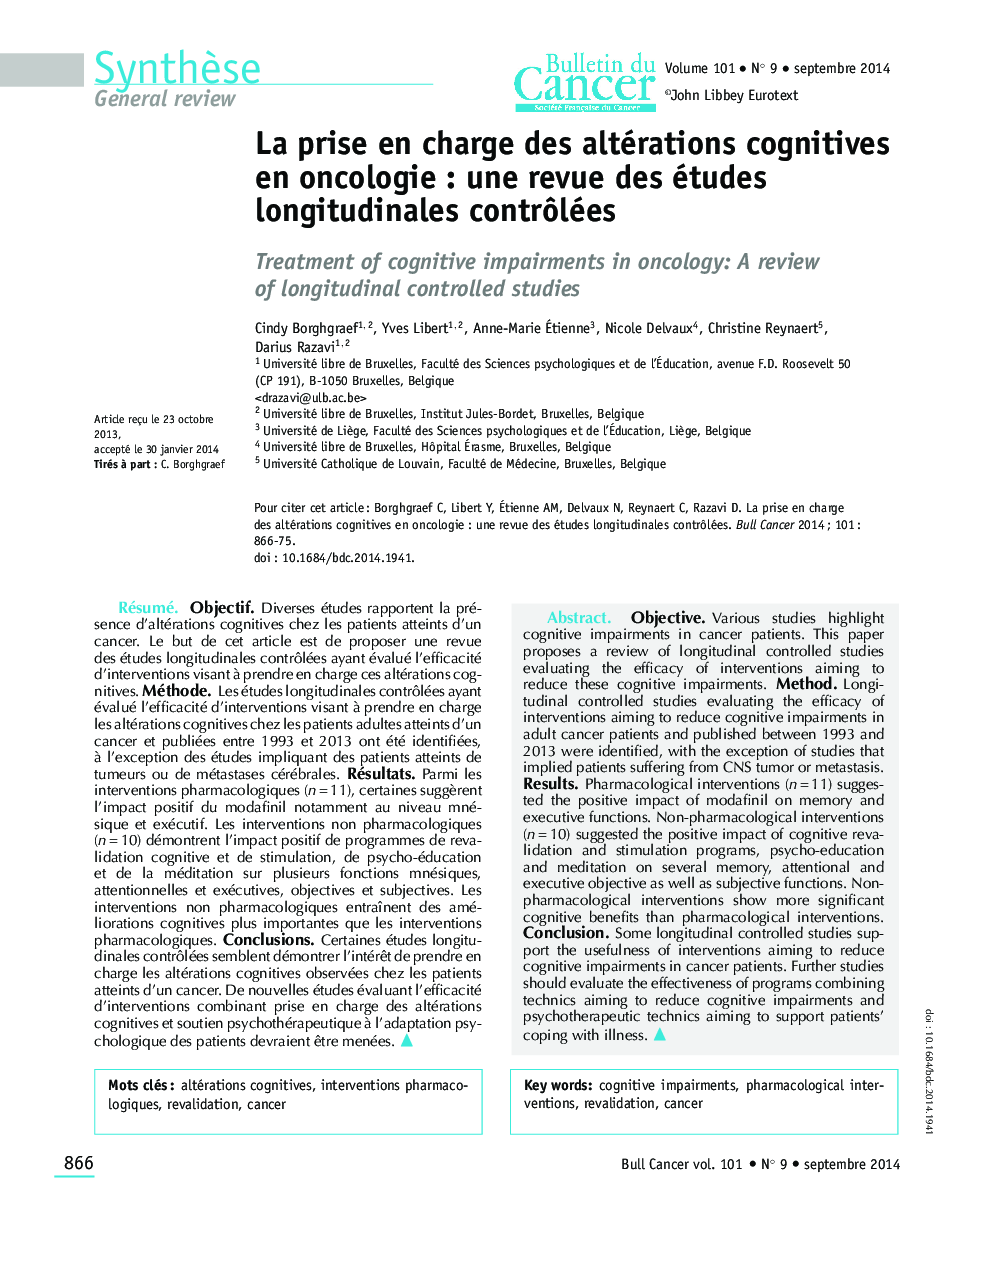 La prise en charge des altérations cognitives en oncologie: une revue des études longitudinales contrÃ´lées